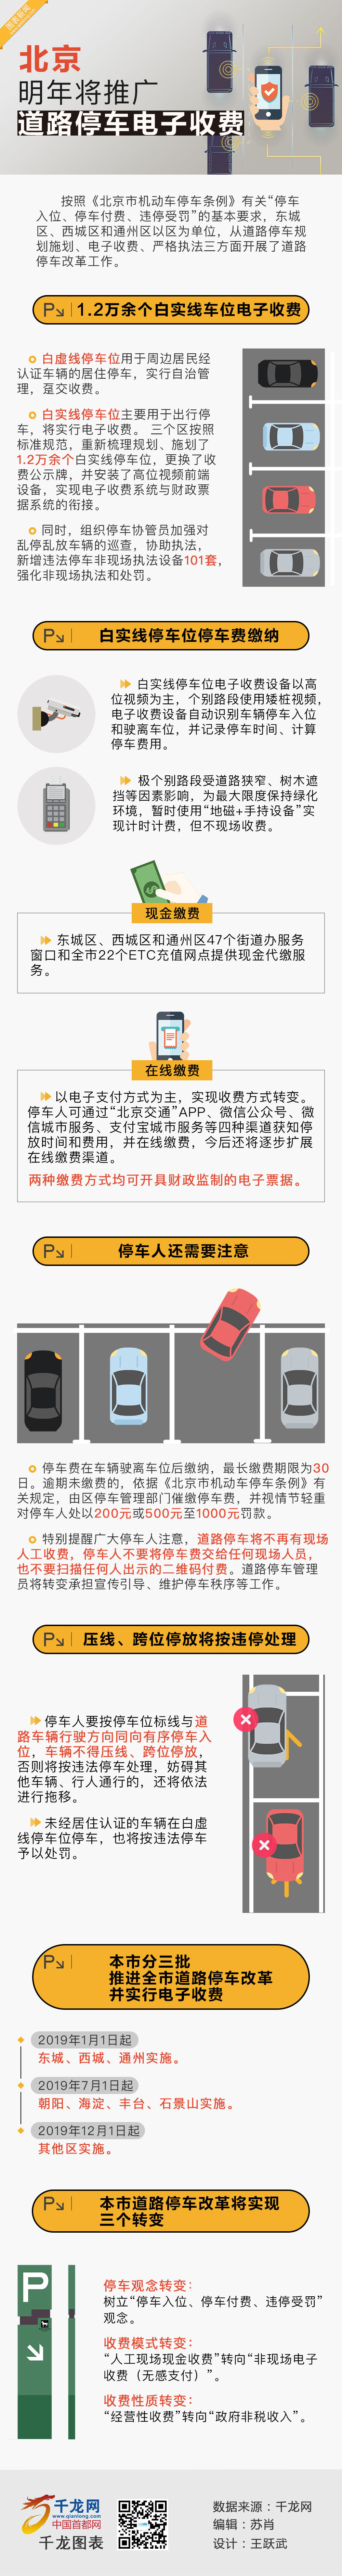 北京明年将推广道路停车电子收费